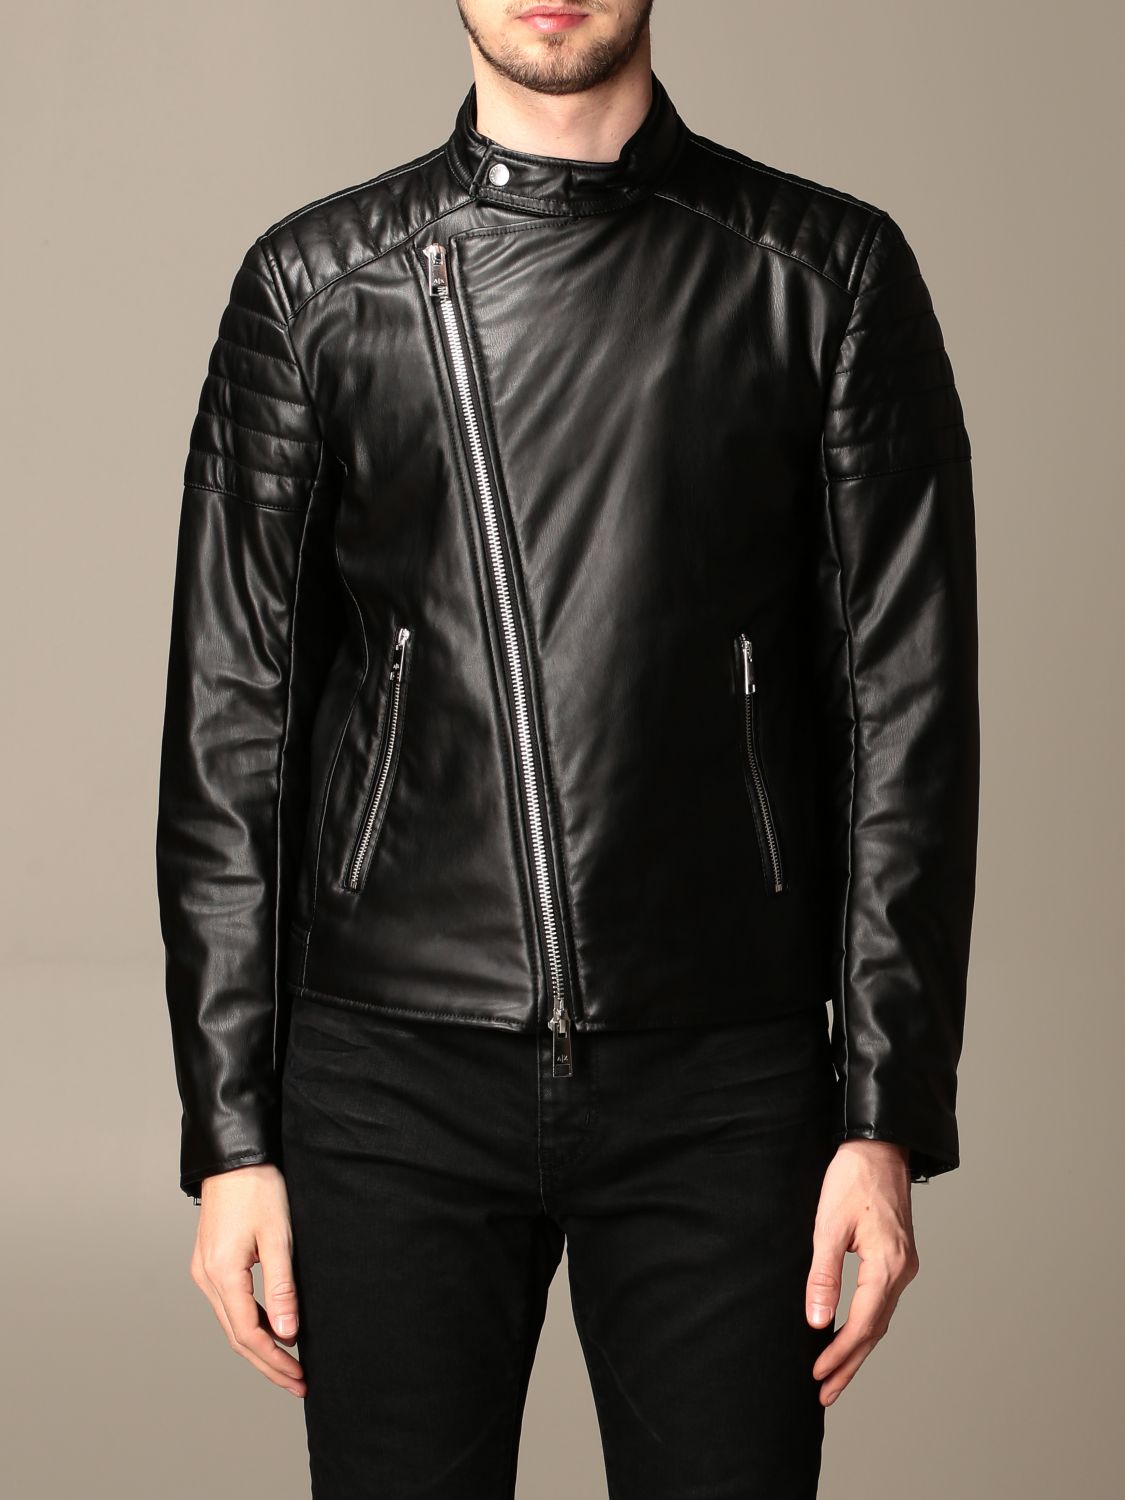 armani exchange leather jackets